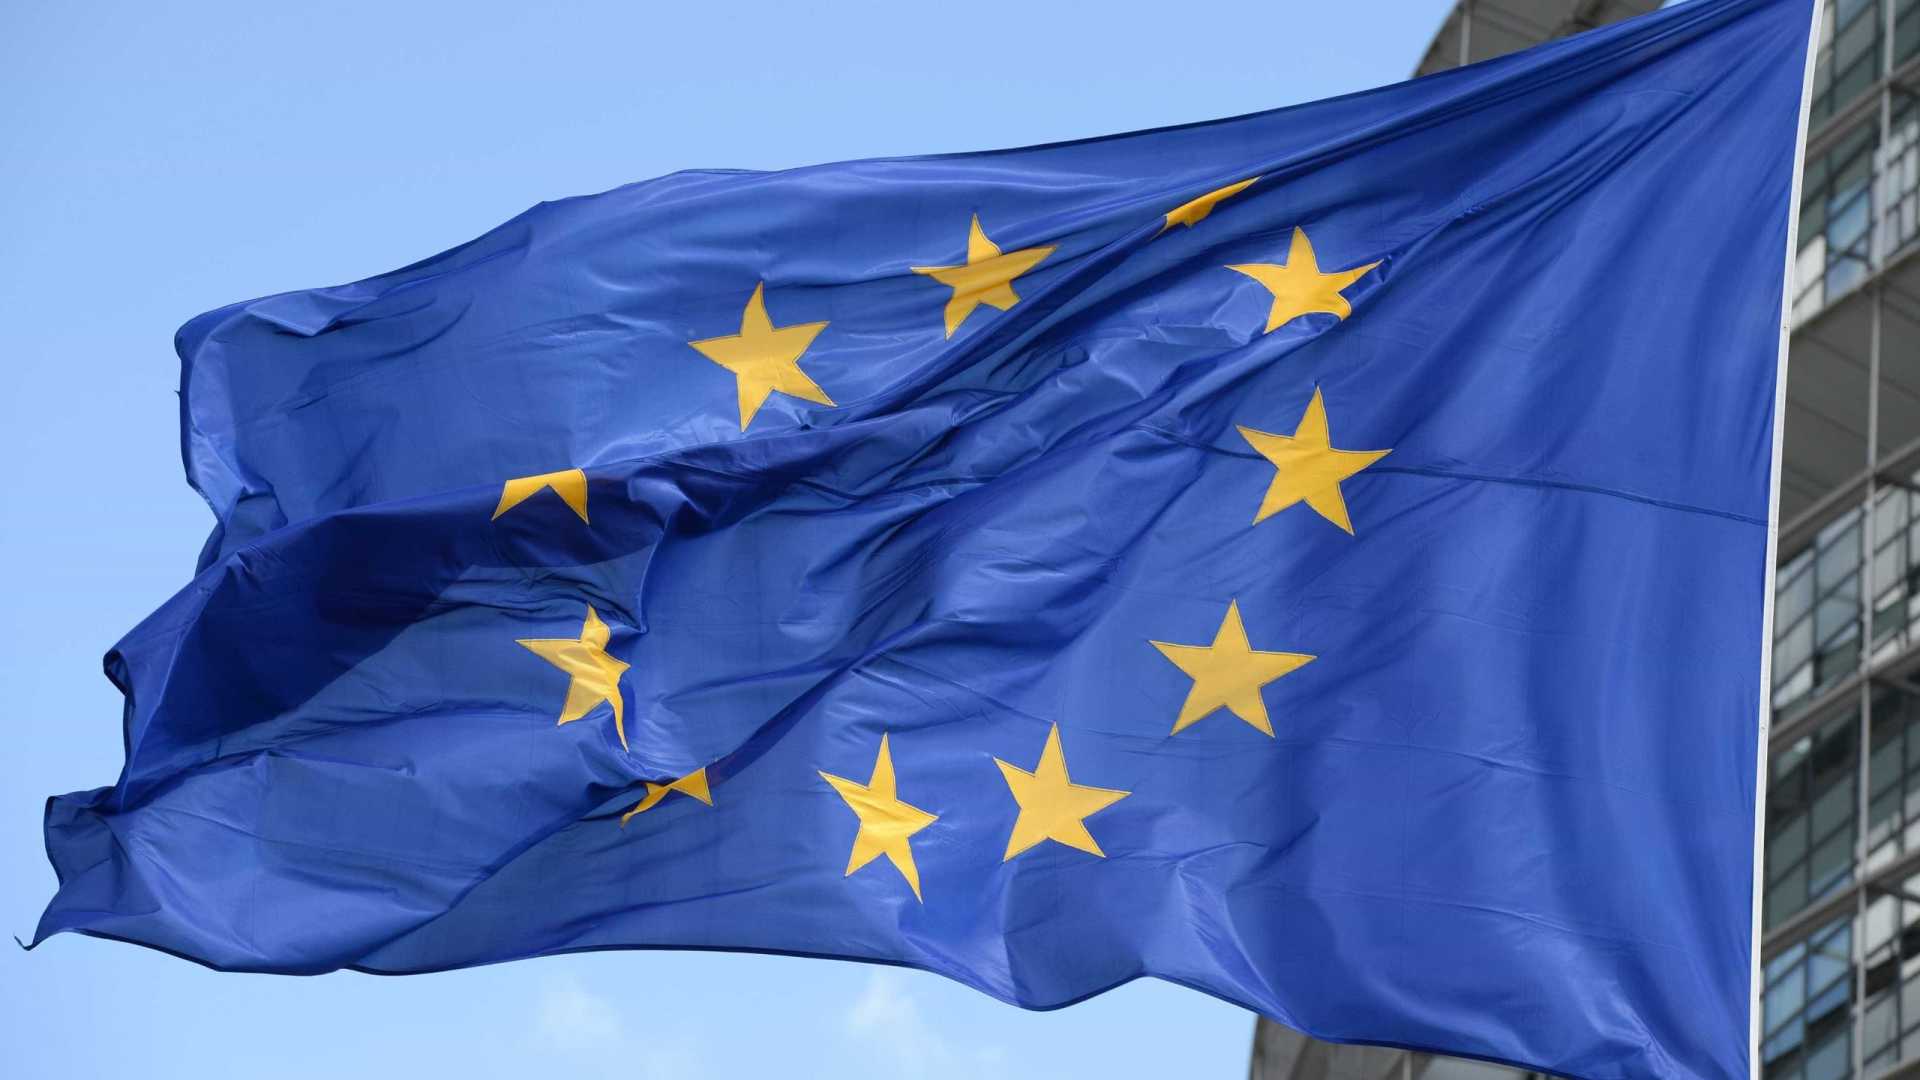 Camex aprova processo na OMC contra União Europeia